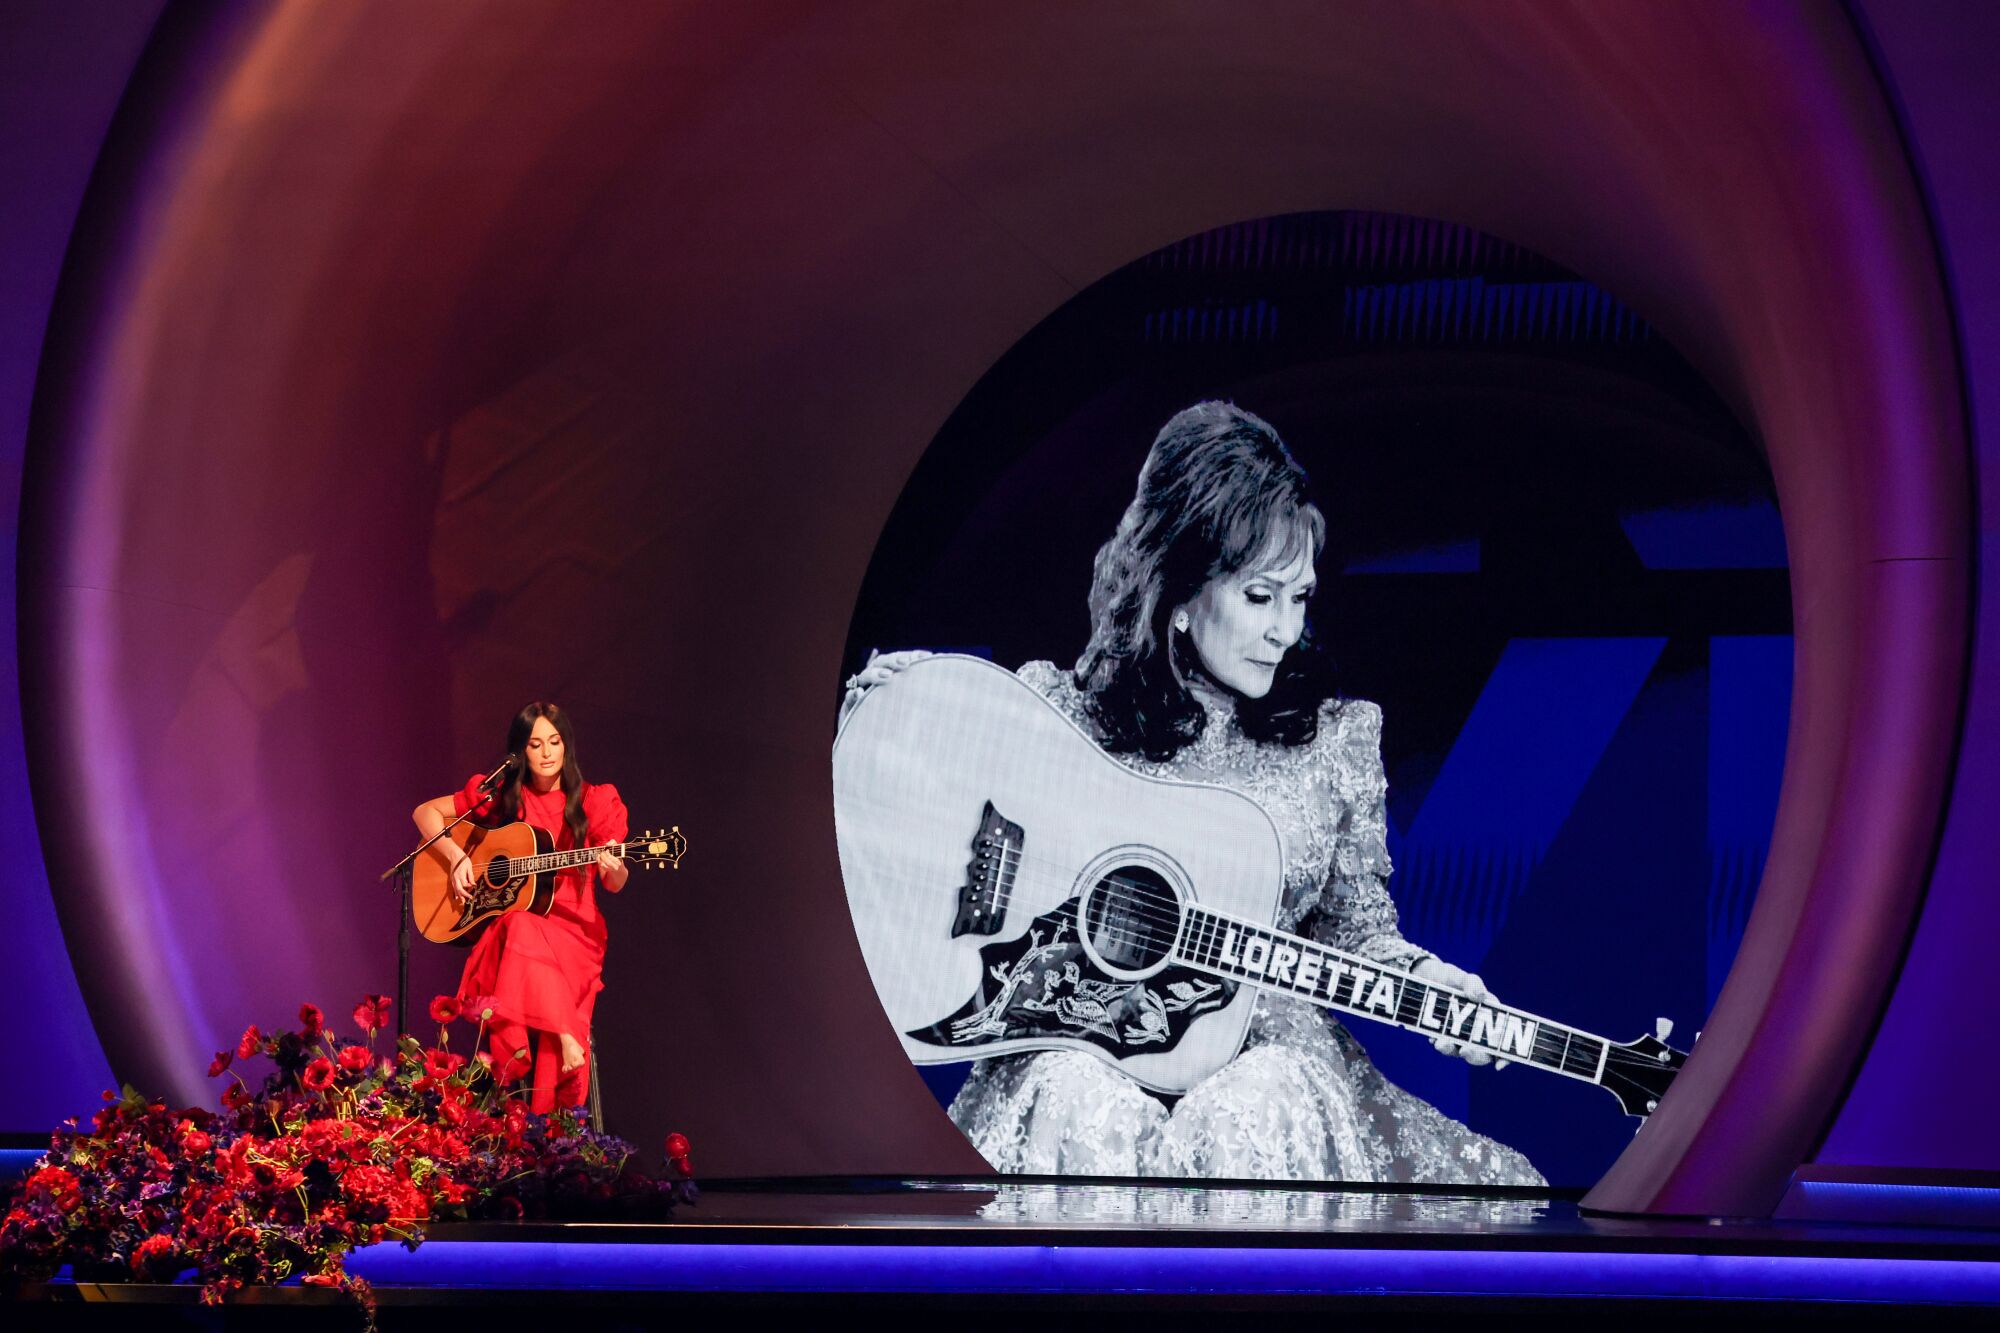 Une femme assise et jouant de la guitare devant un micro et une image géante en noir et blanc d'une femme jouant de la guitare